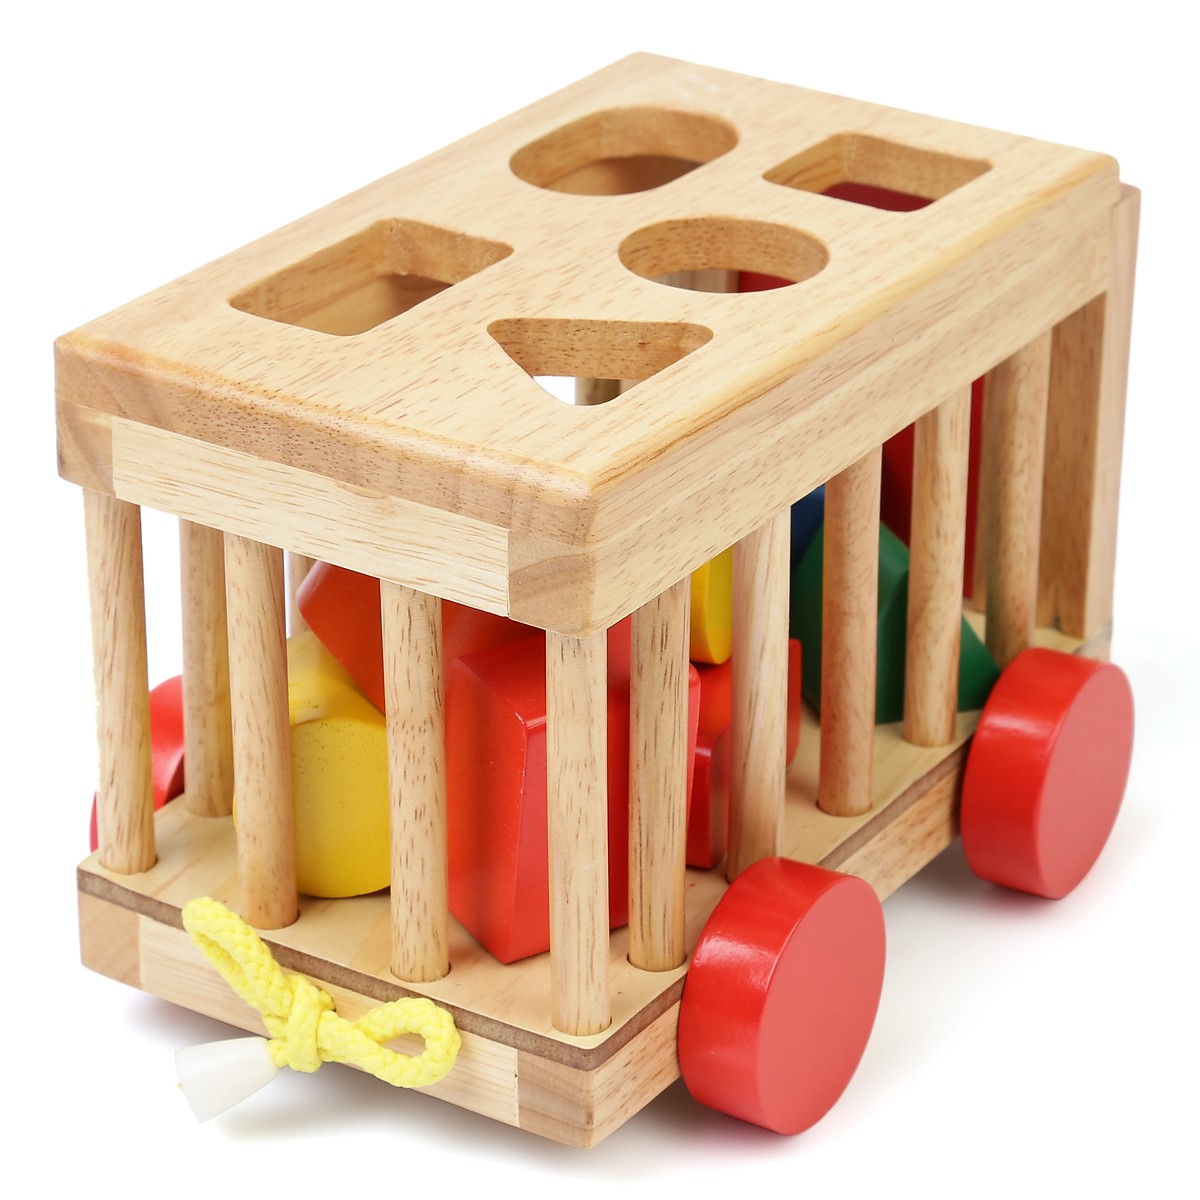 Xe cũi thả hình  phát triển khả ghi nhớ - đồ chơi trí tuệ bằng gỗ an toàn cho bé MK